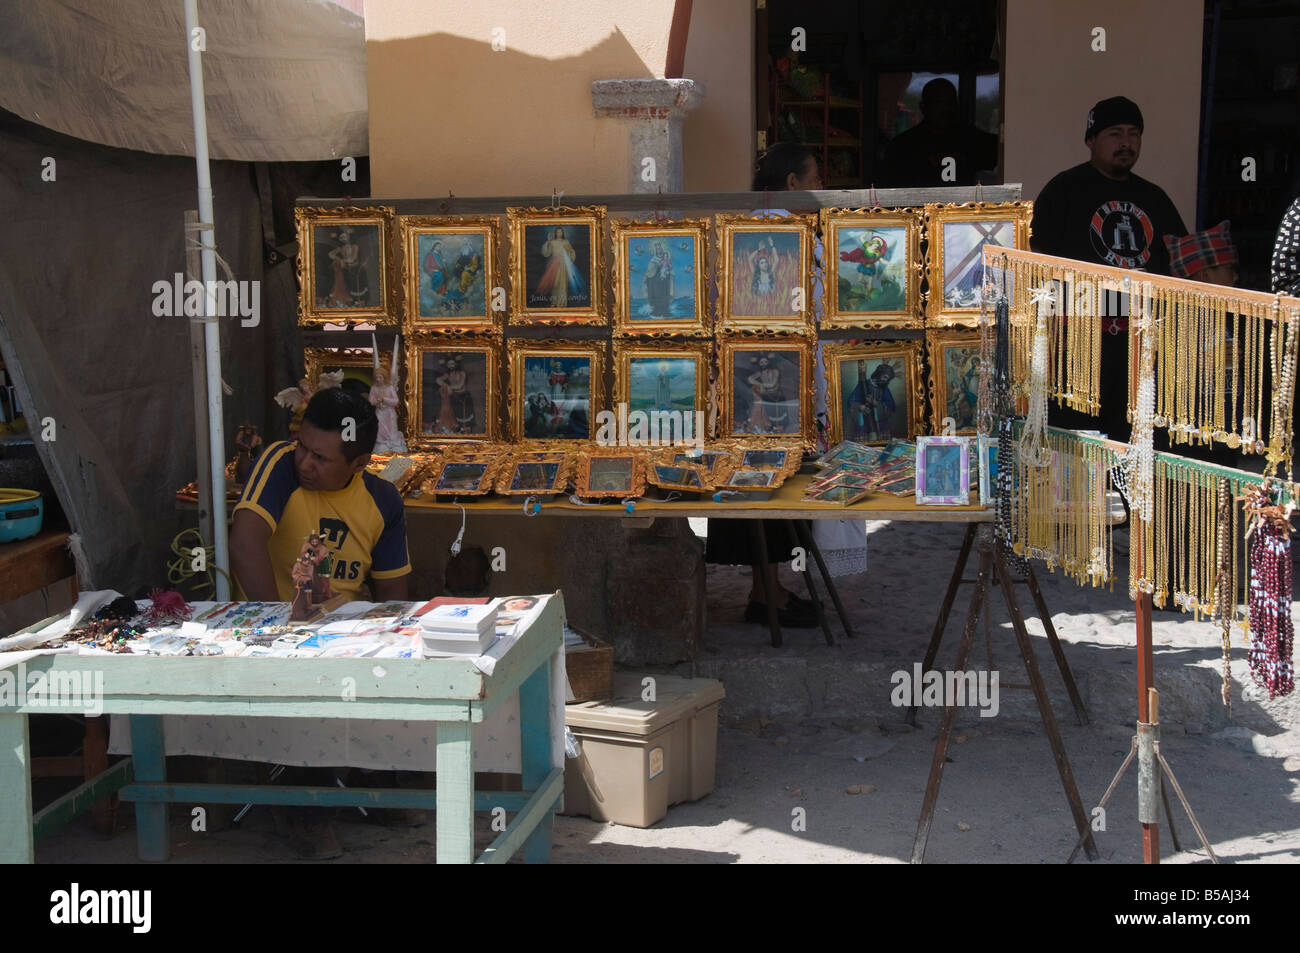 Bancarelle che vendono souvenir religiosi e artefatti, Santuario de Atotonilco, stato di Guanajuato, Messico Foto Stock